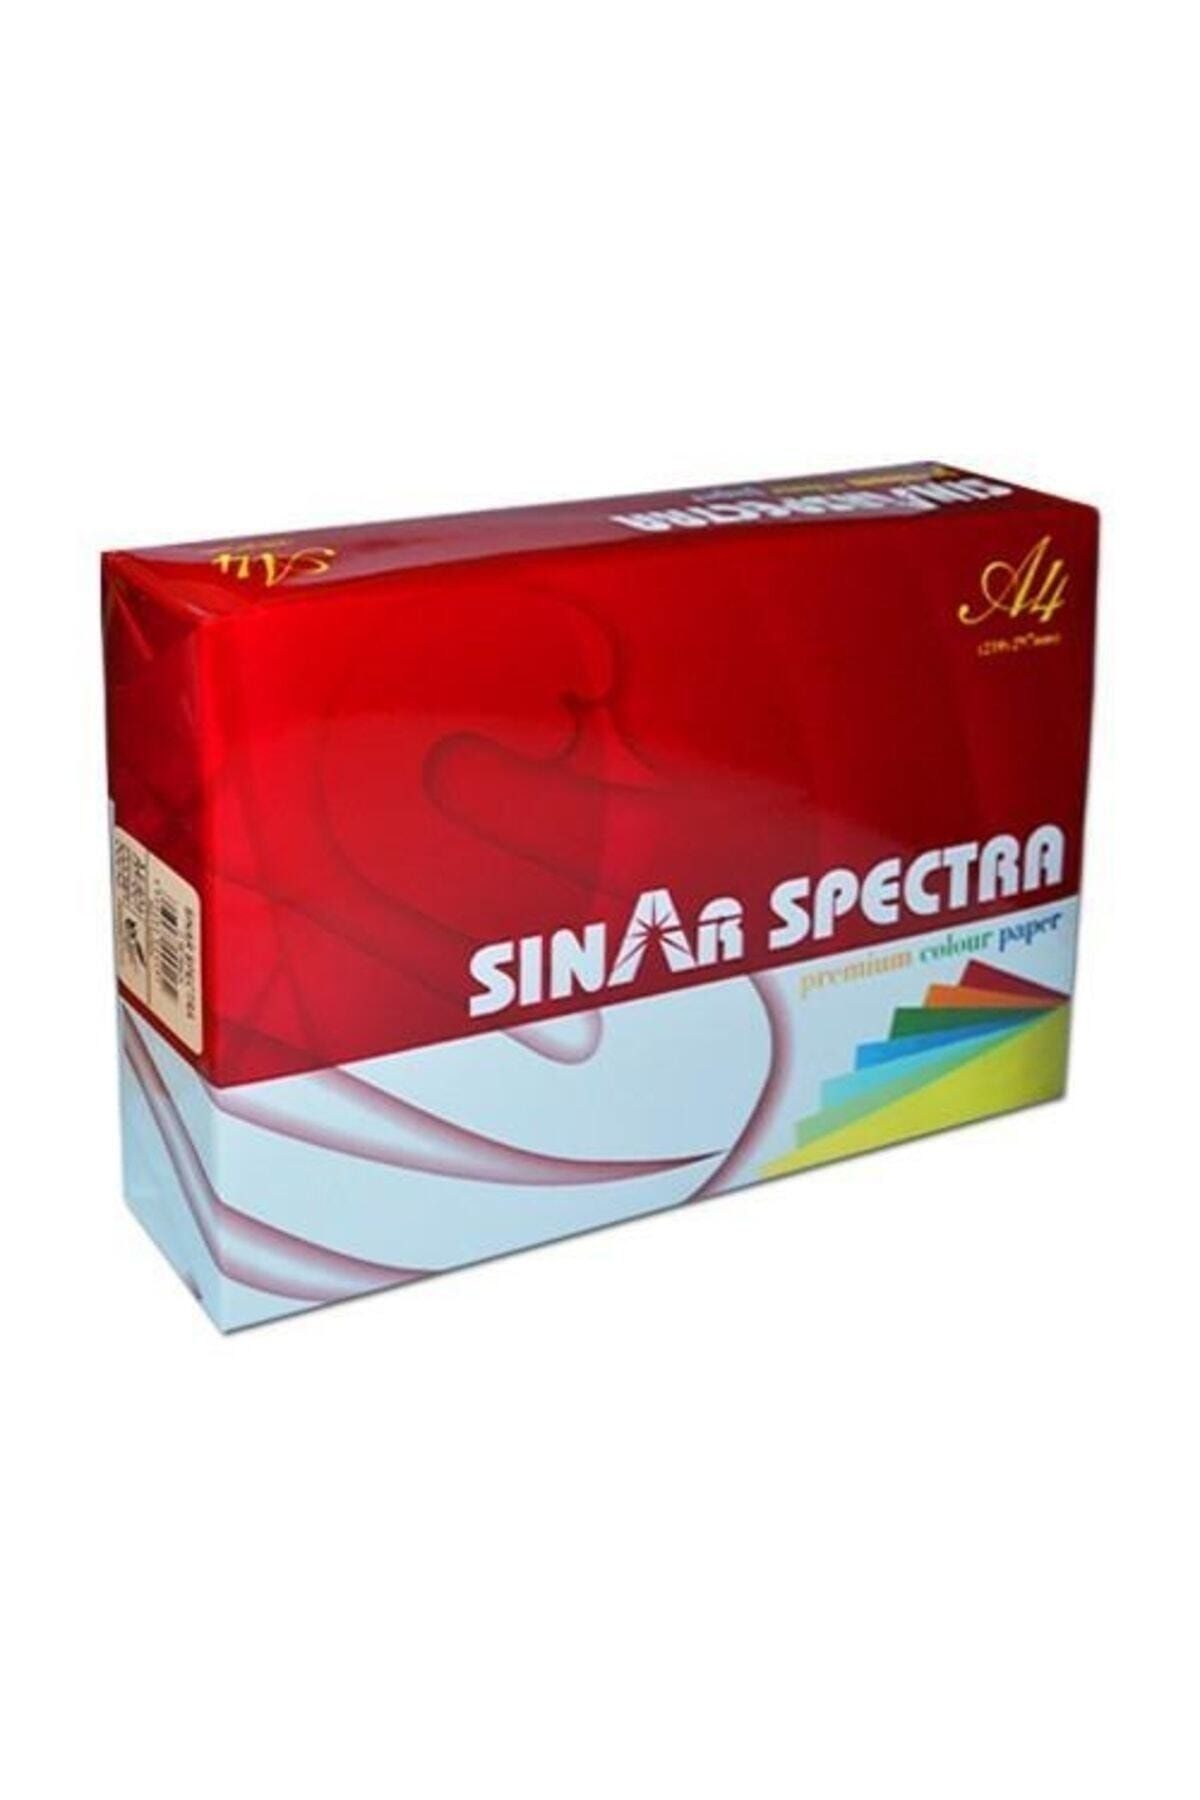 Spectra Sınar Renkli Fotokopi Kağıdı A4 80 Gr. 500 Sf. It170 Pink